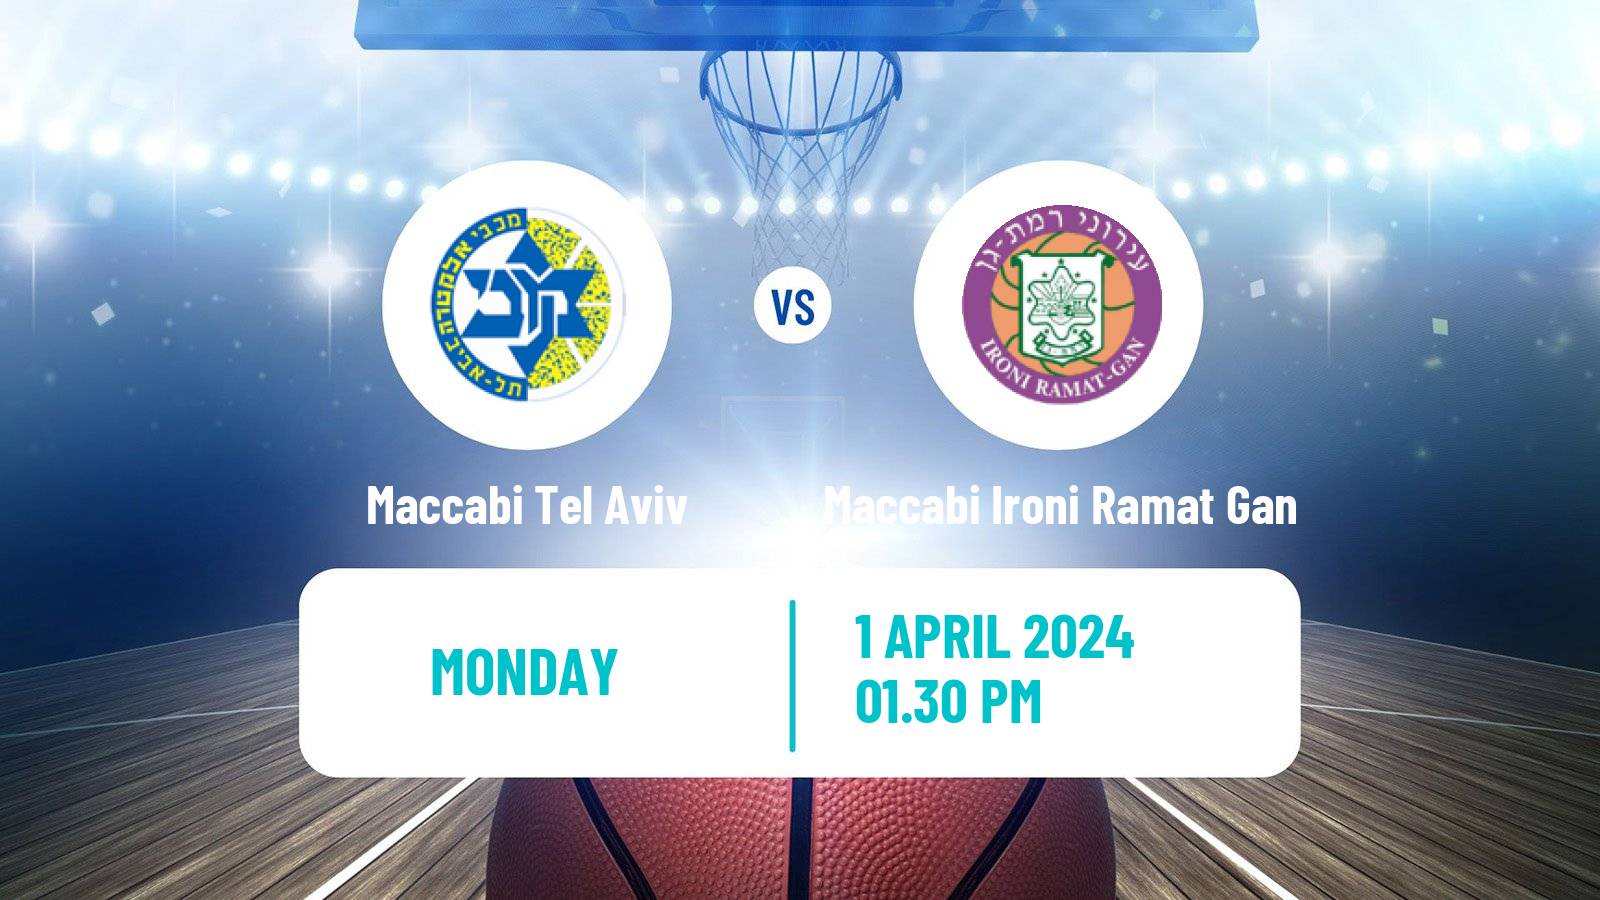 Basketball Israeli Cup Basketball Maccabi Tel Aviv - Maccabi Ironi Ramat Gan